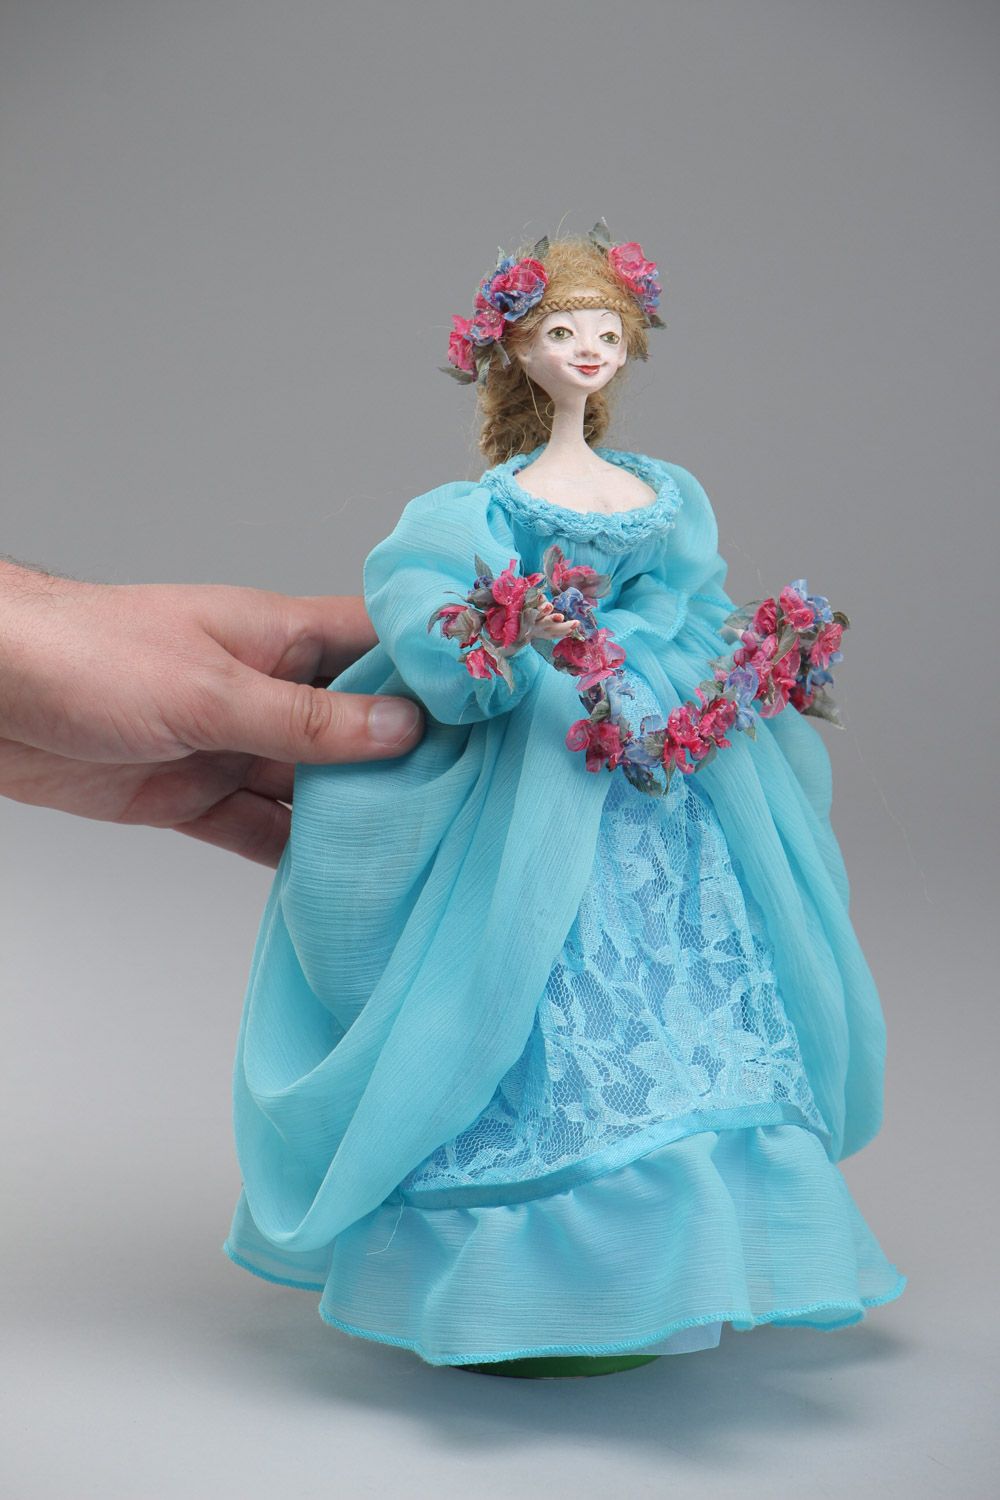 Авторская кукла из паперклея для коллекции интерьерная ручной работы в голубом  фото 5